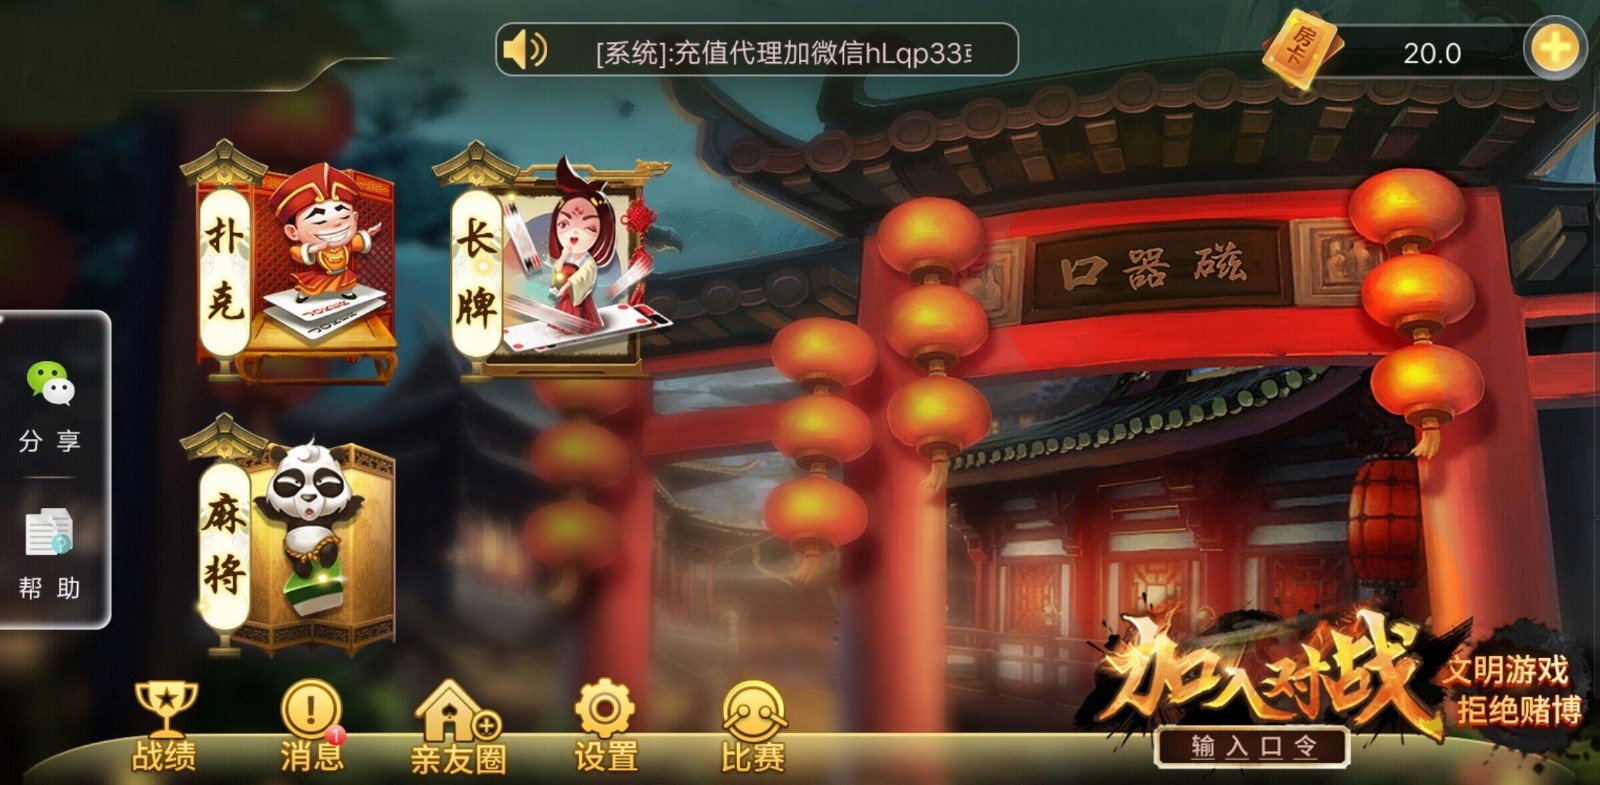 捕鱼皇帝游戏官方网站手机版1.3.7